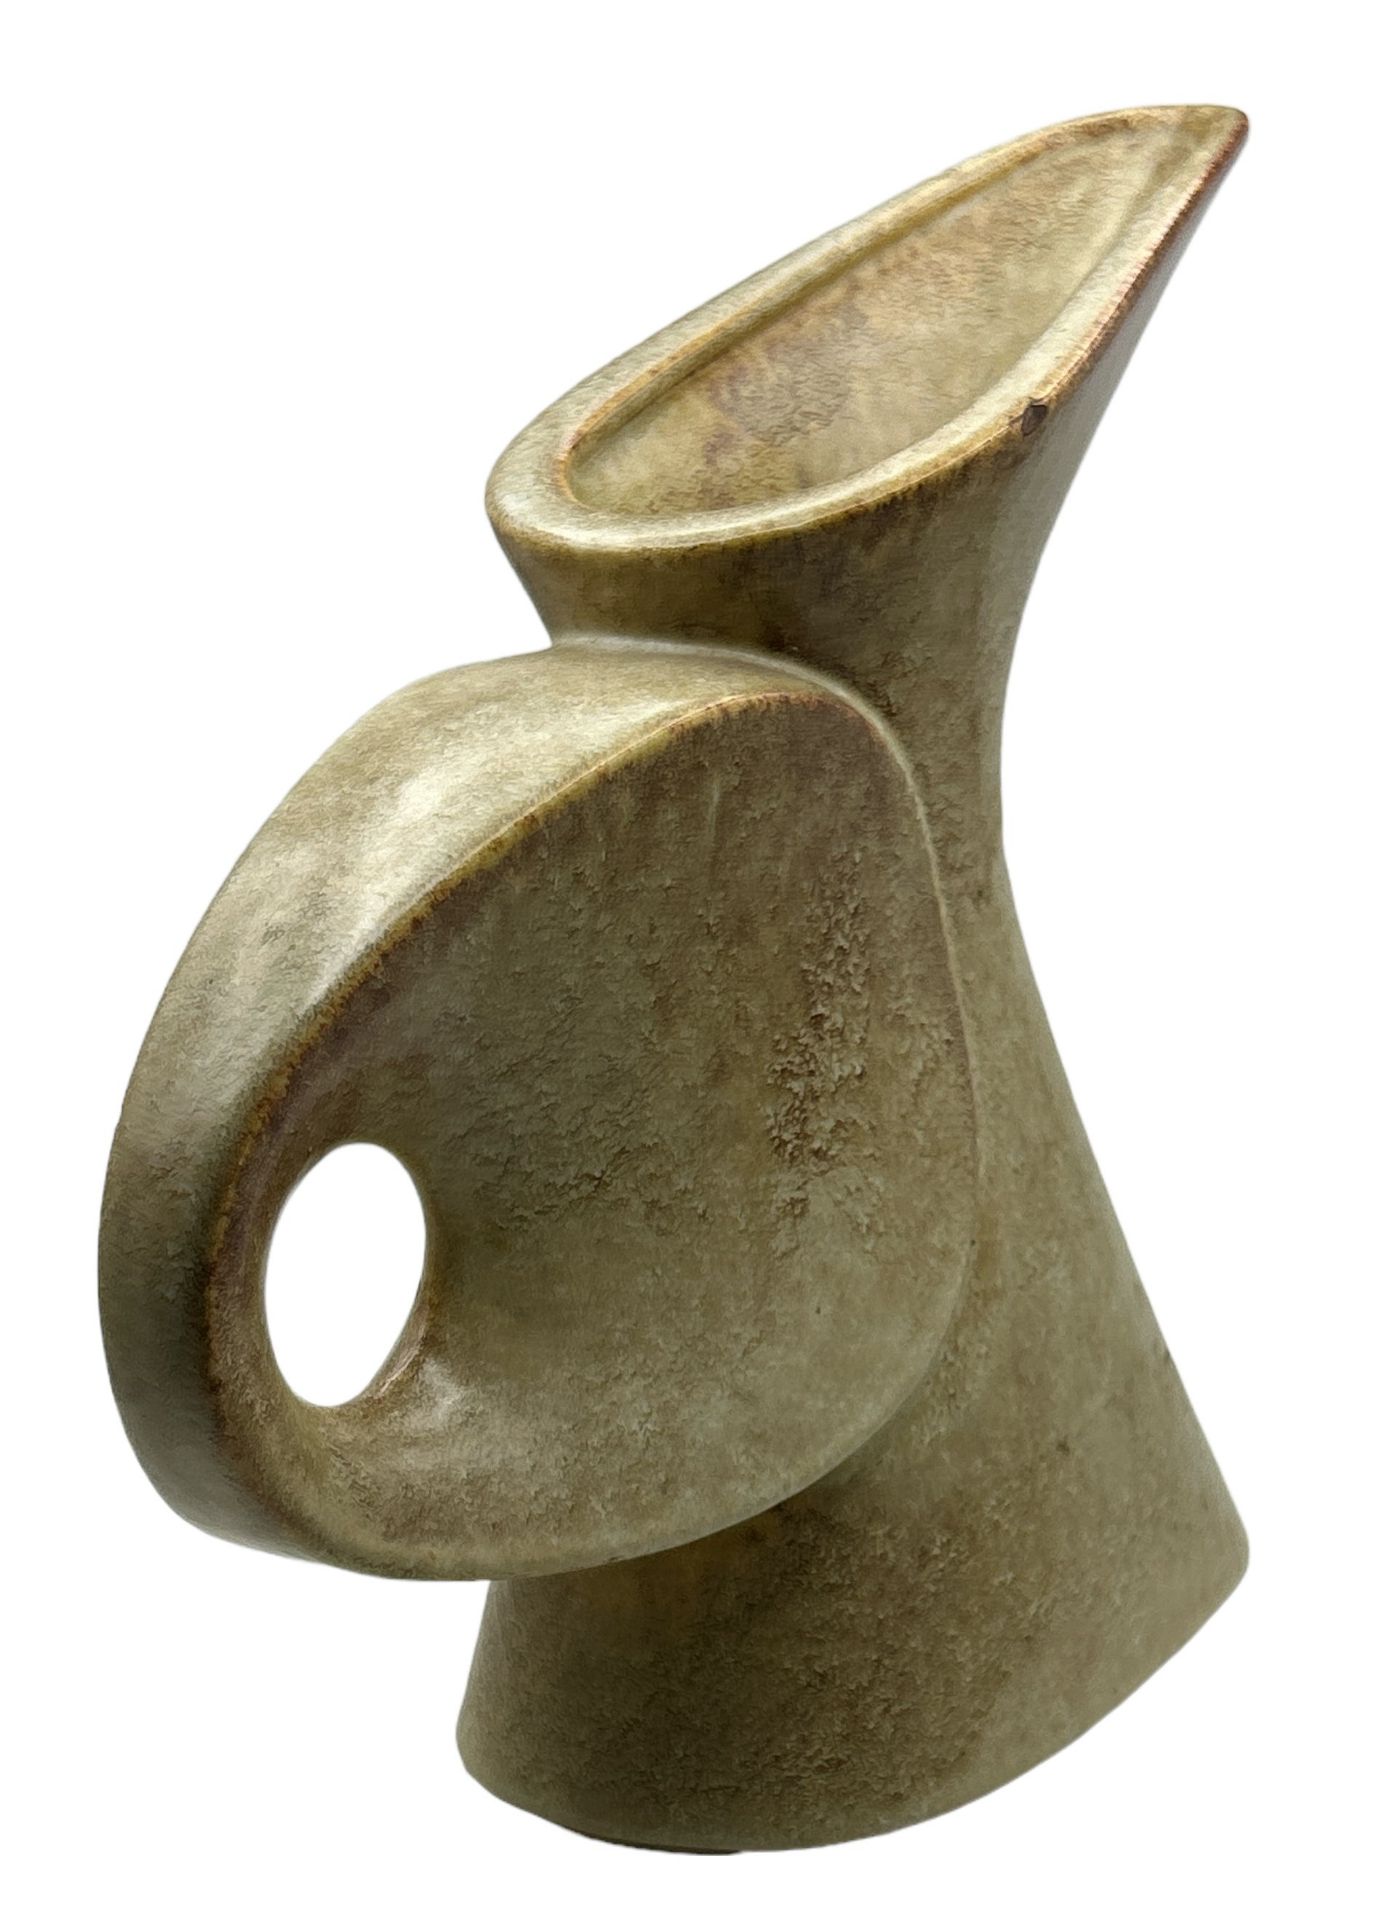 gr. Vase von Bertoncello, Ceramiche d'Arte, Italy, 60-er Jahre, Rand mit minimalen Abplatzer, H-28  - Bild 2 aus 4